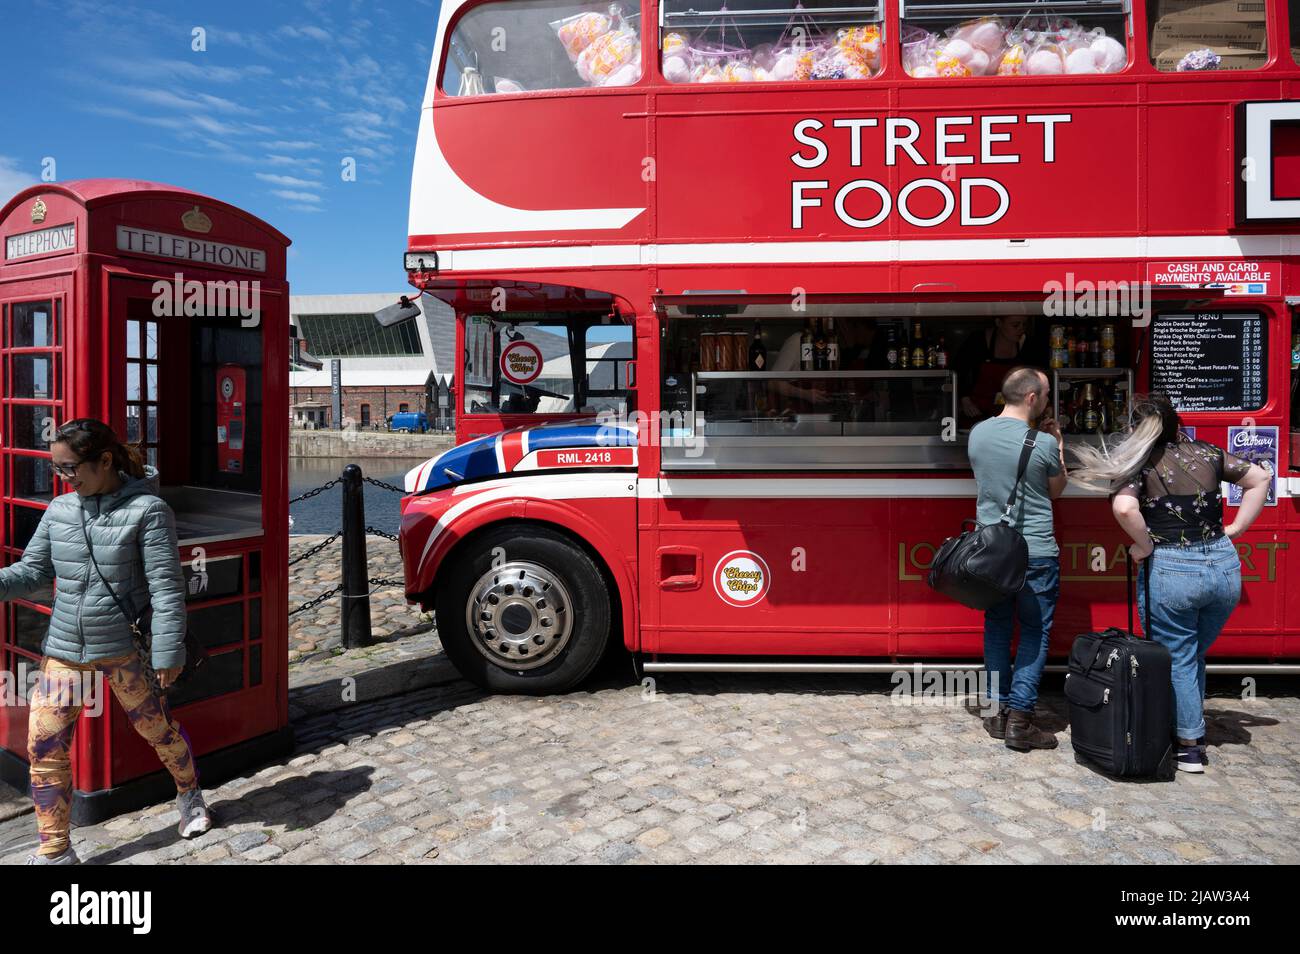 Liverpool, Inglaterra, Reino Unido. Autobús de dos pisos que vende comida callejera al lado de una caja de teléfono roja. Foto de stock